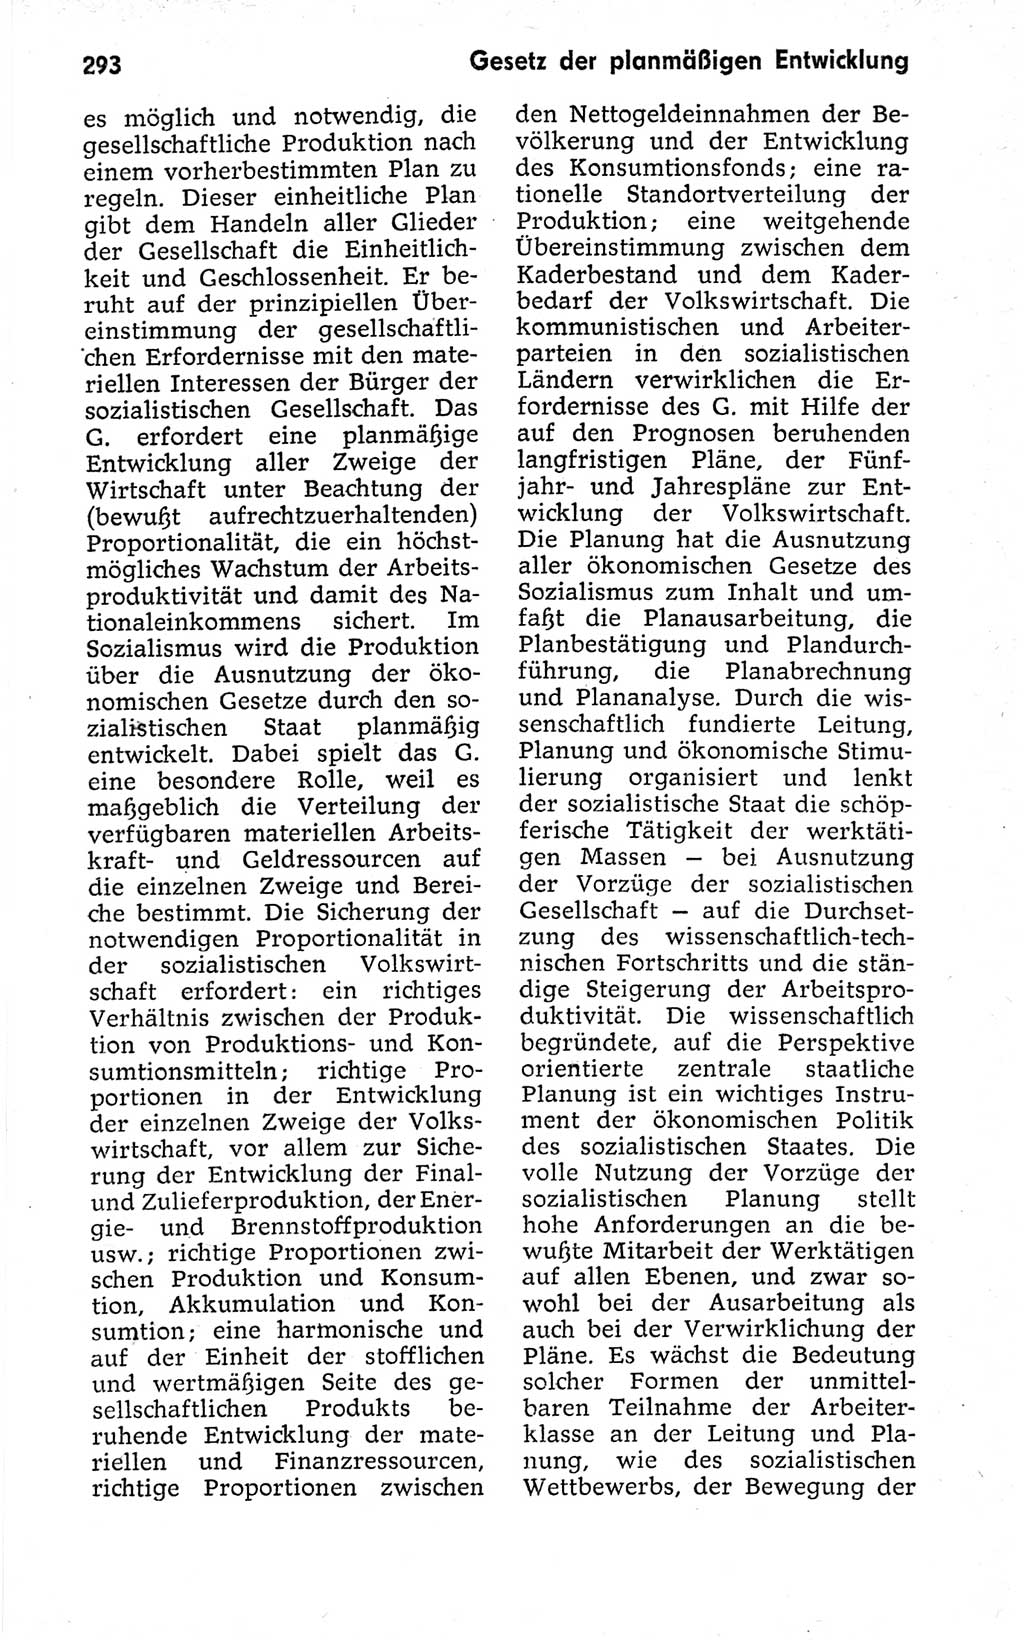 Kleines politisches Wörterbuch [Deutsche Demokratische Republik (DDR)] 1973, Seite 293 (Kl. pol. Wb. DDR 1973, S. 293)